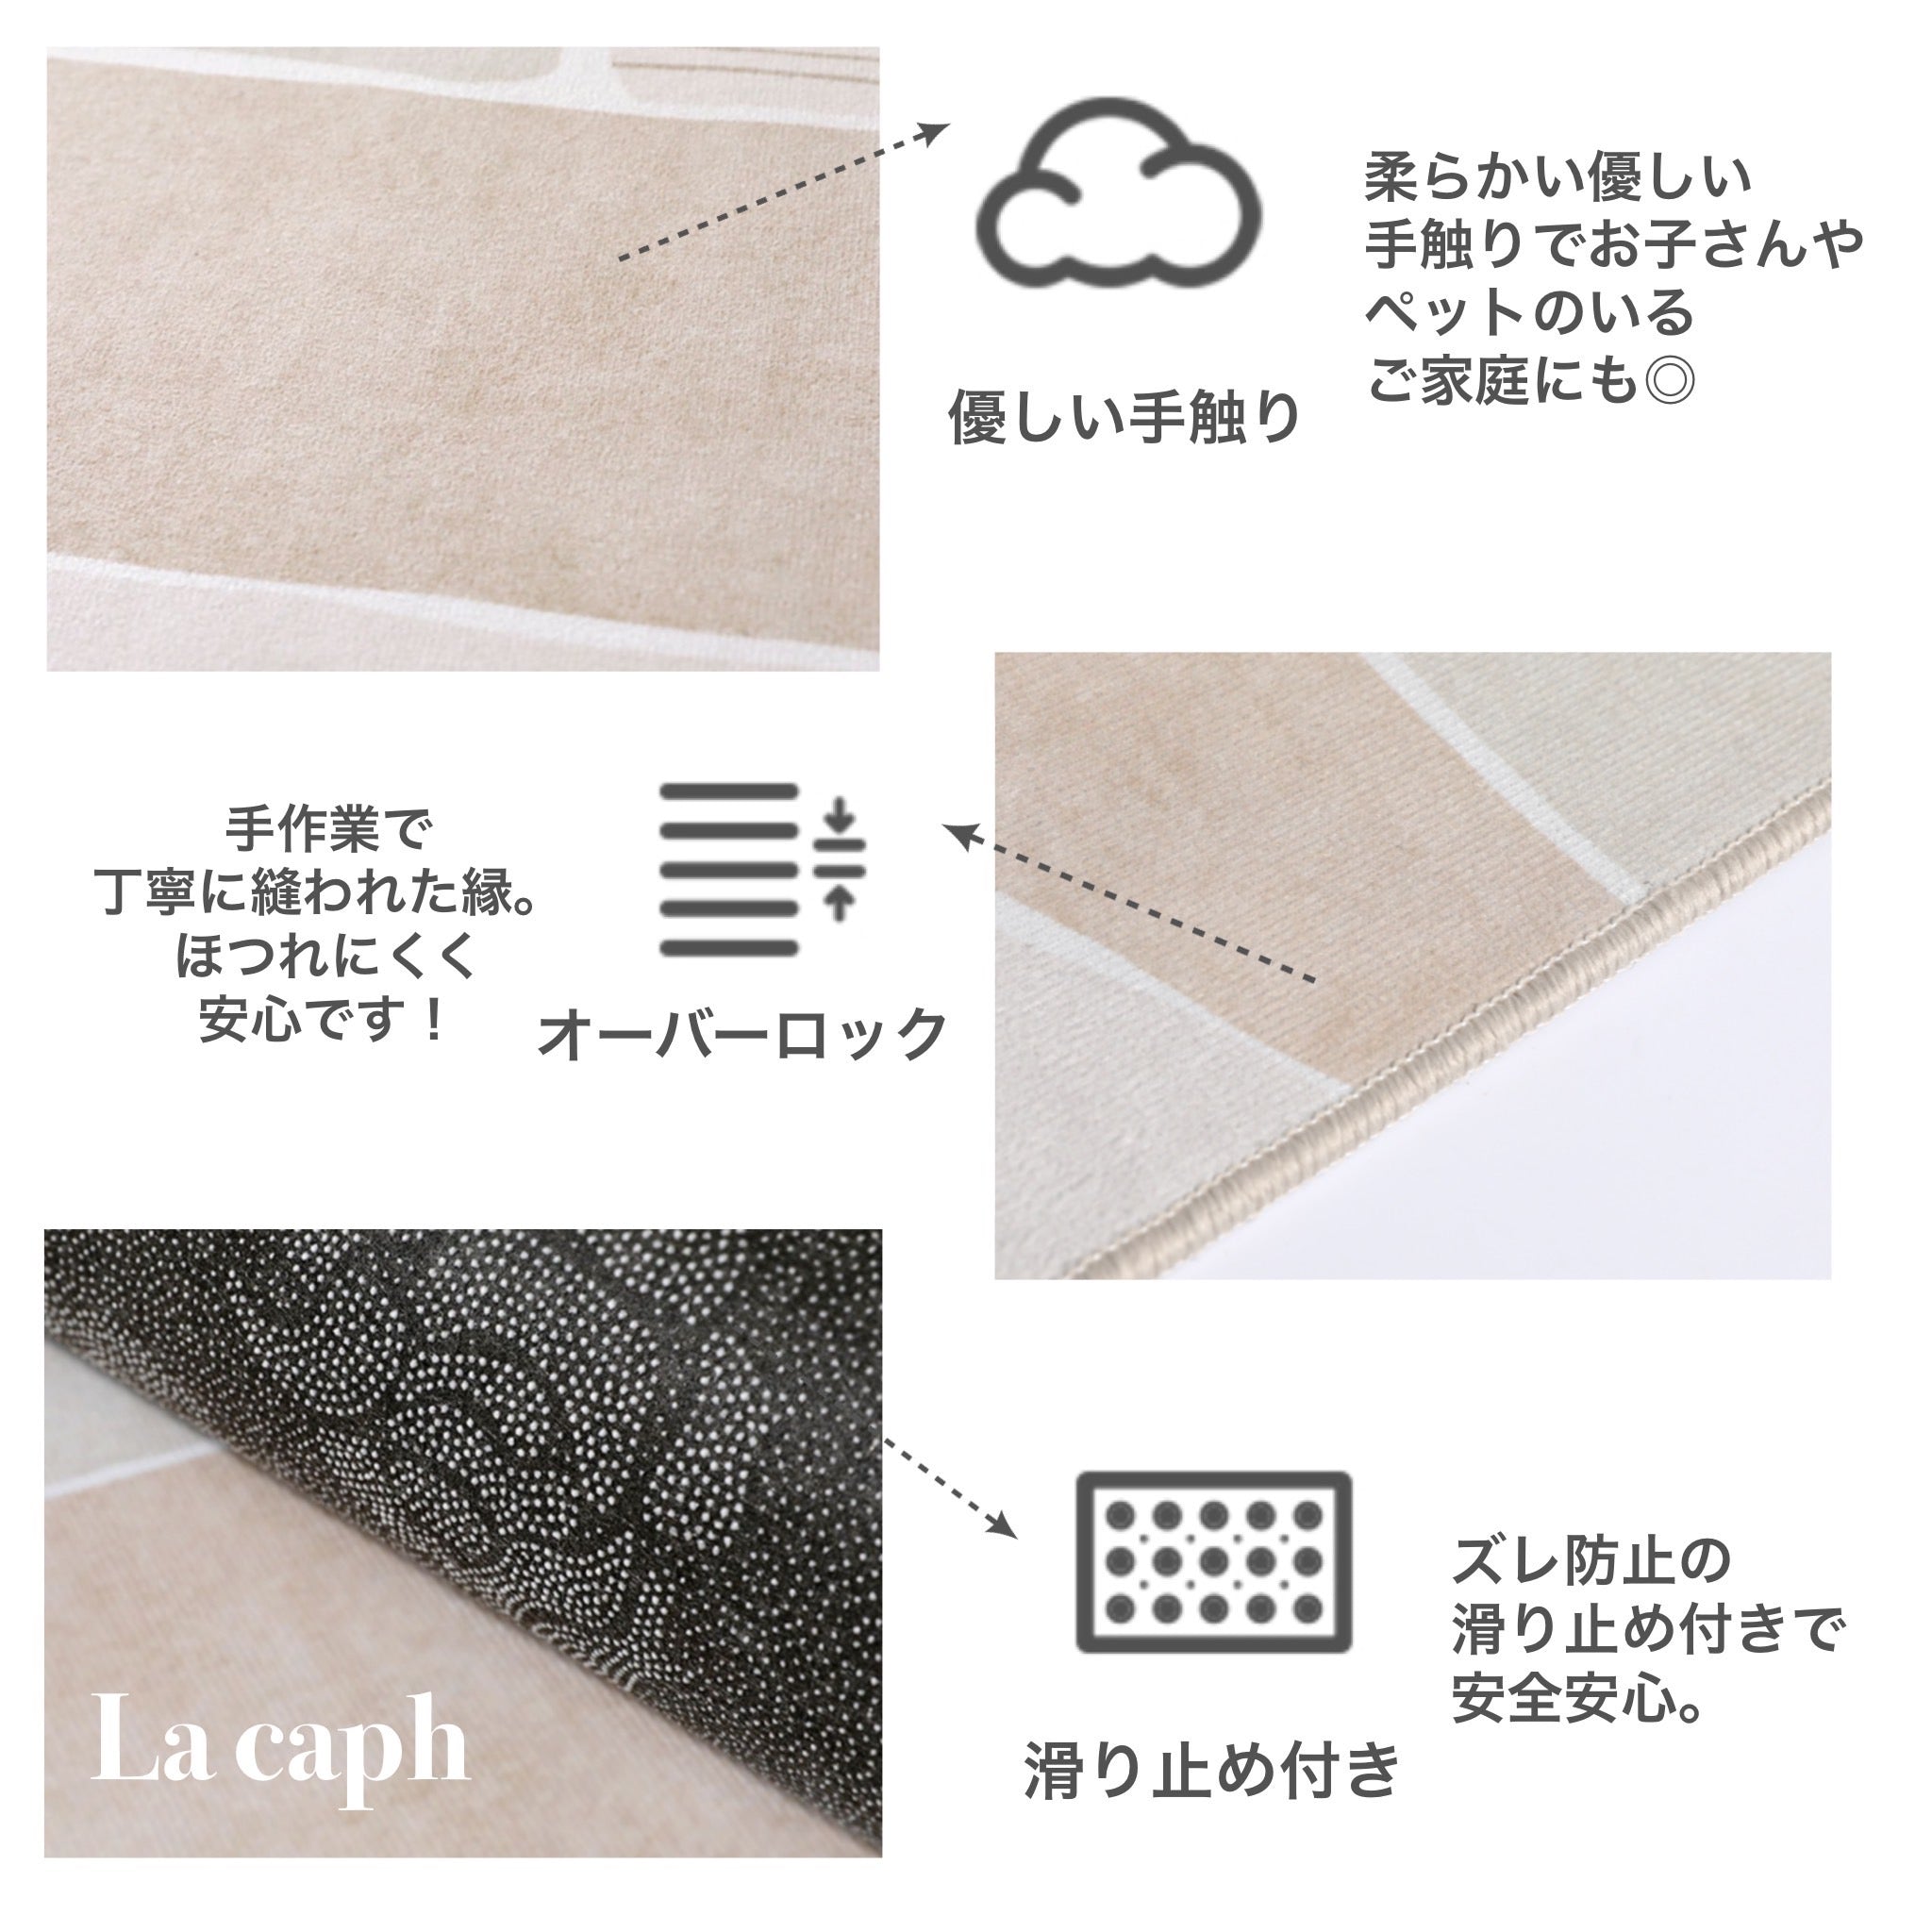 4design monotone modern square carpet